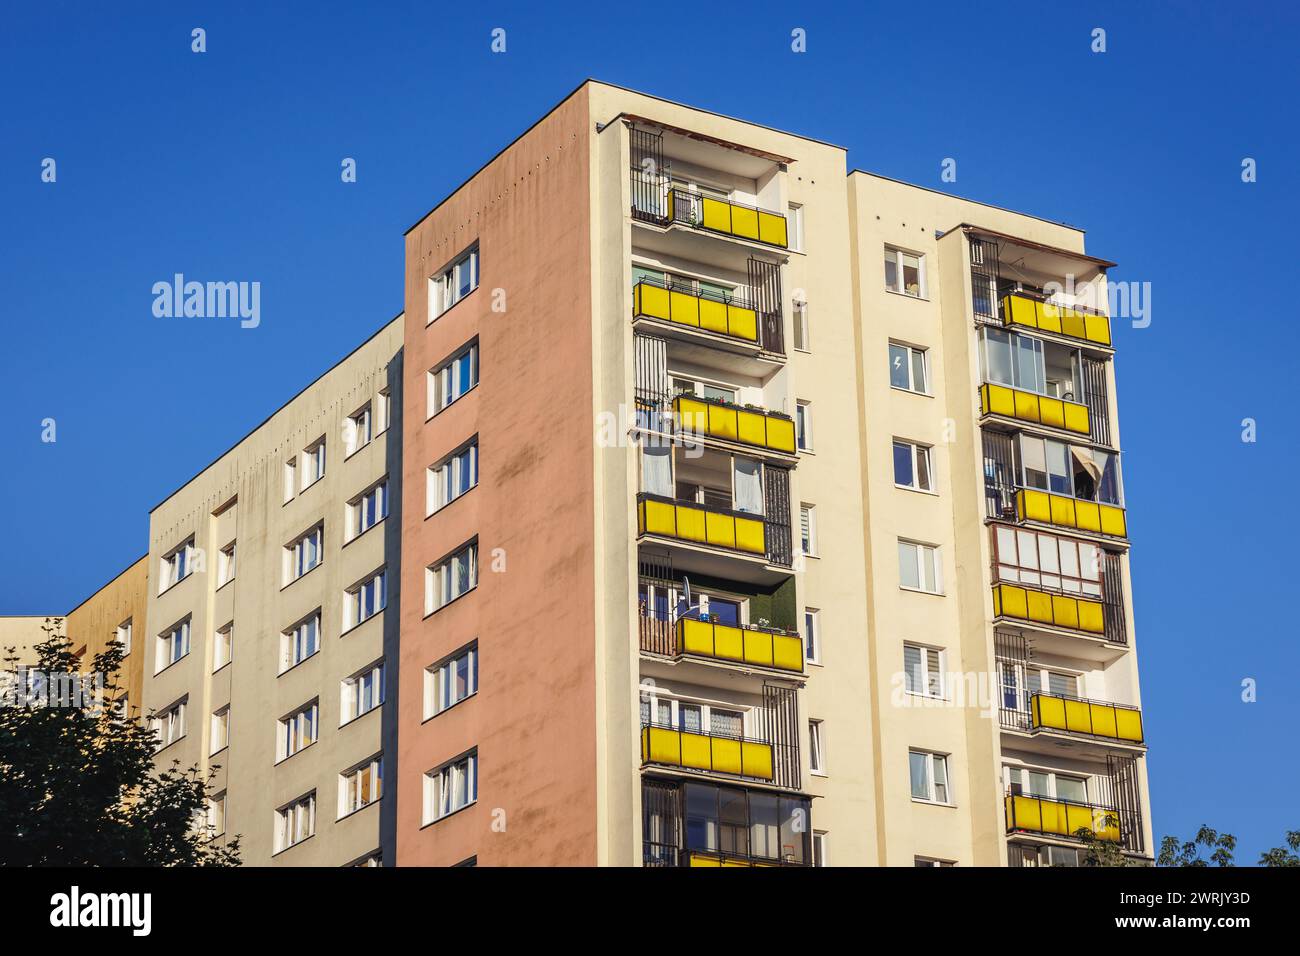 Blocco di appartamenti chiamato Wielka Plyta - panelak nell'area di Goclaw, sottodistretto di Praga-Poludnie, città di Varsavia, Polonia Foto Stock